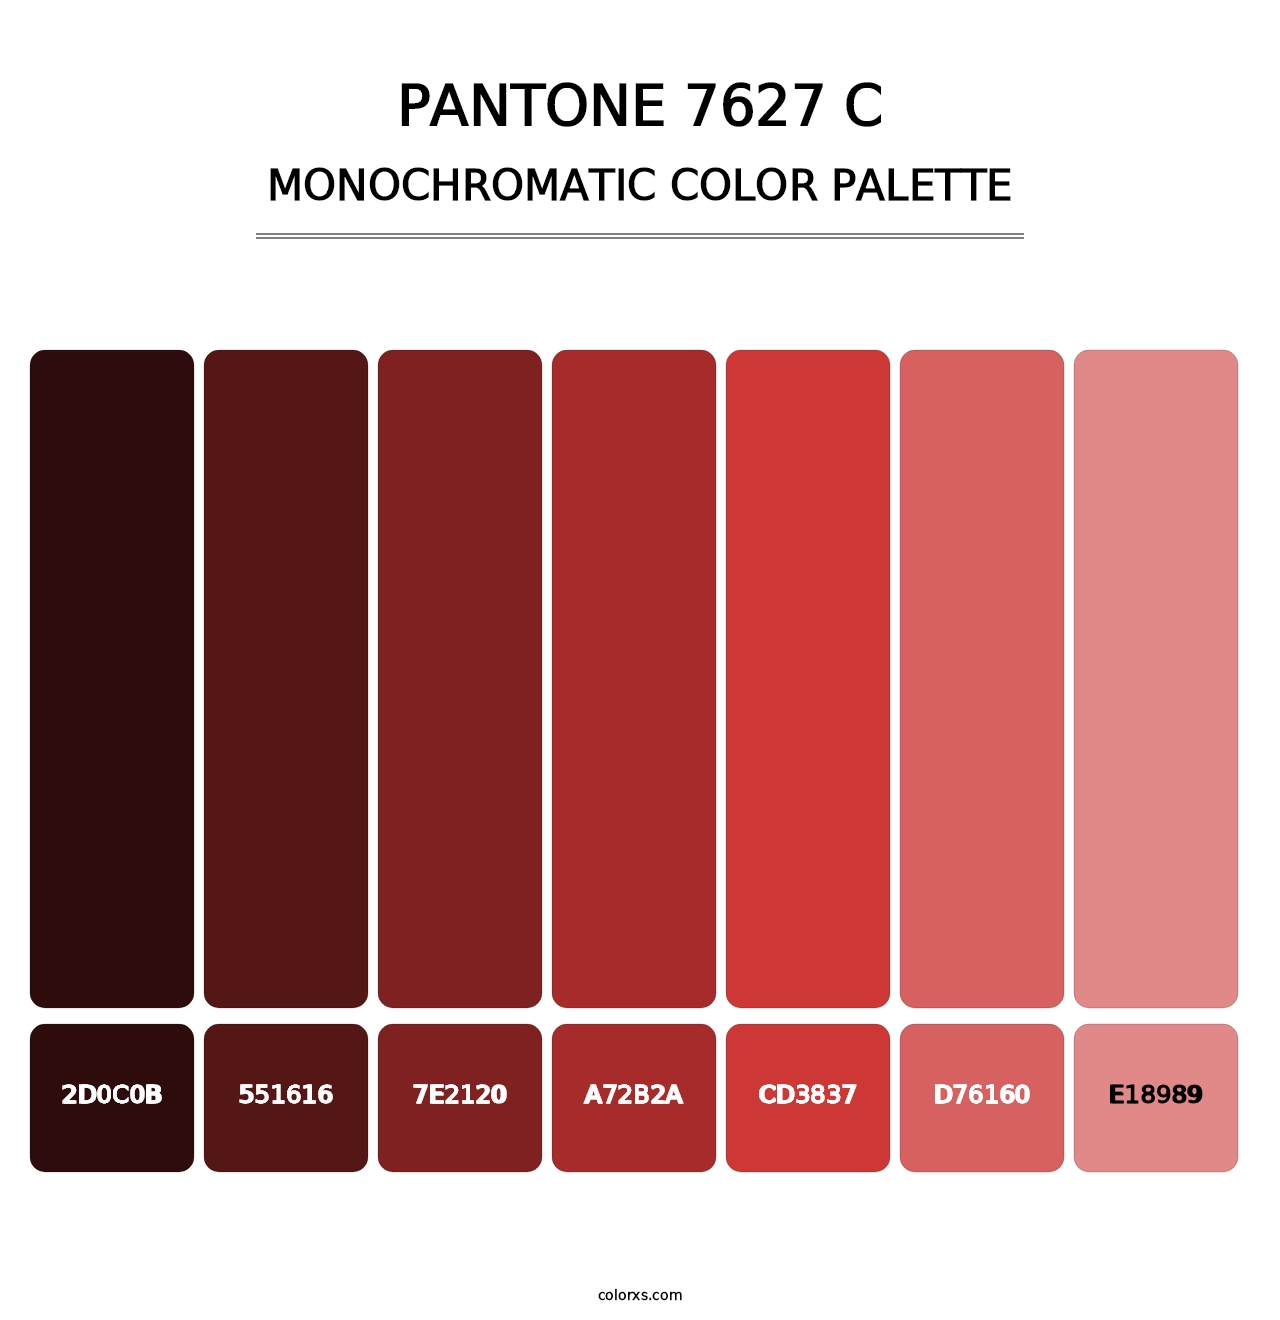 PANTONE 7627 C - Monochromatic Color Palette